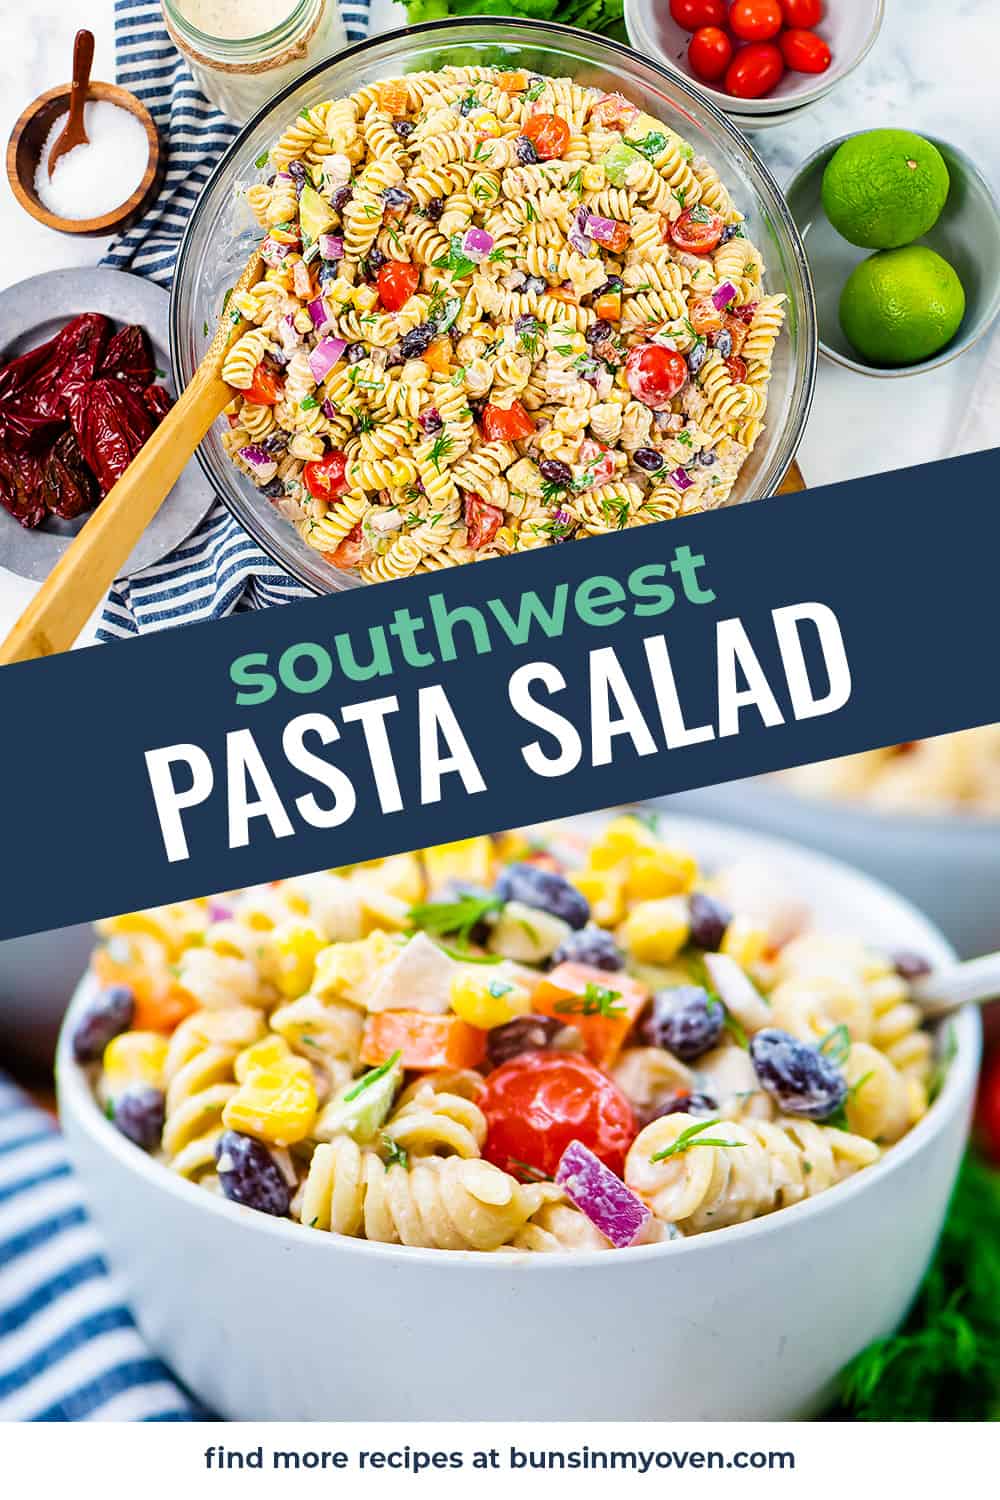 Collage of Southwest pasta salad recipe.